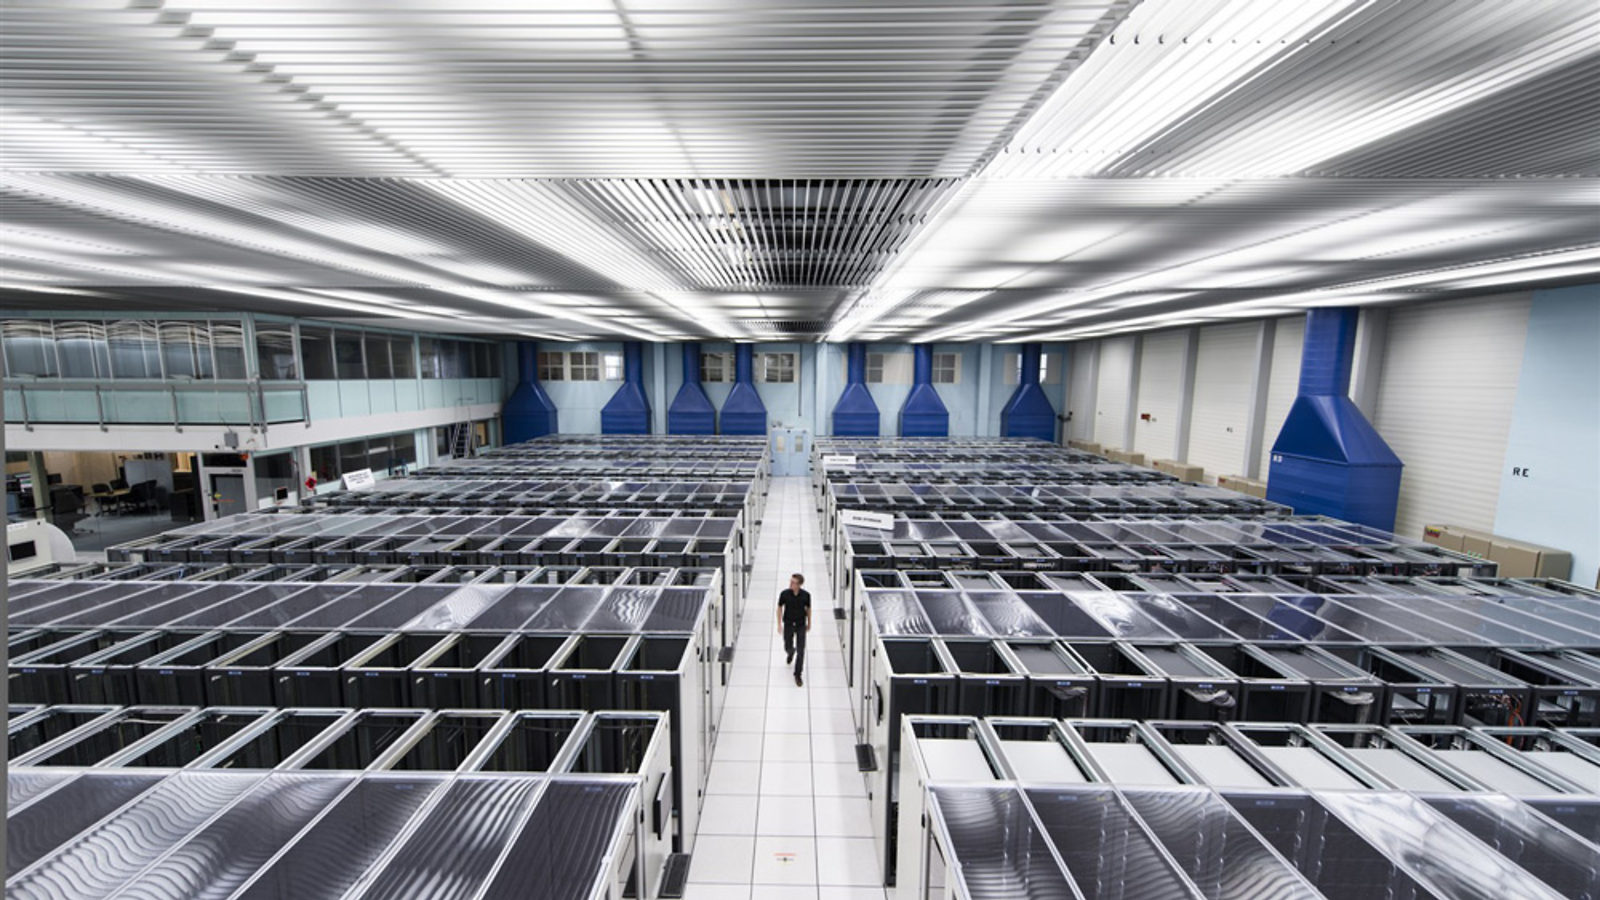 Photo of CERN computer center